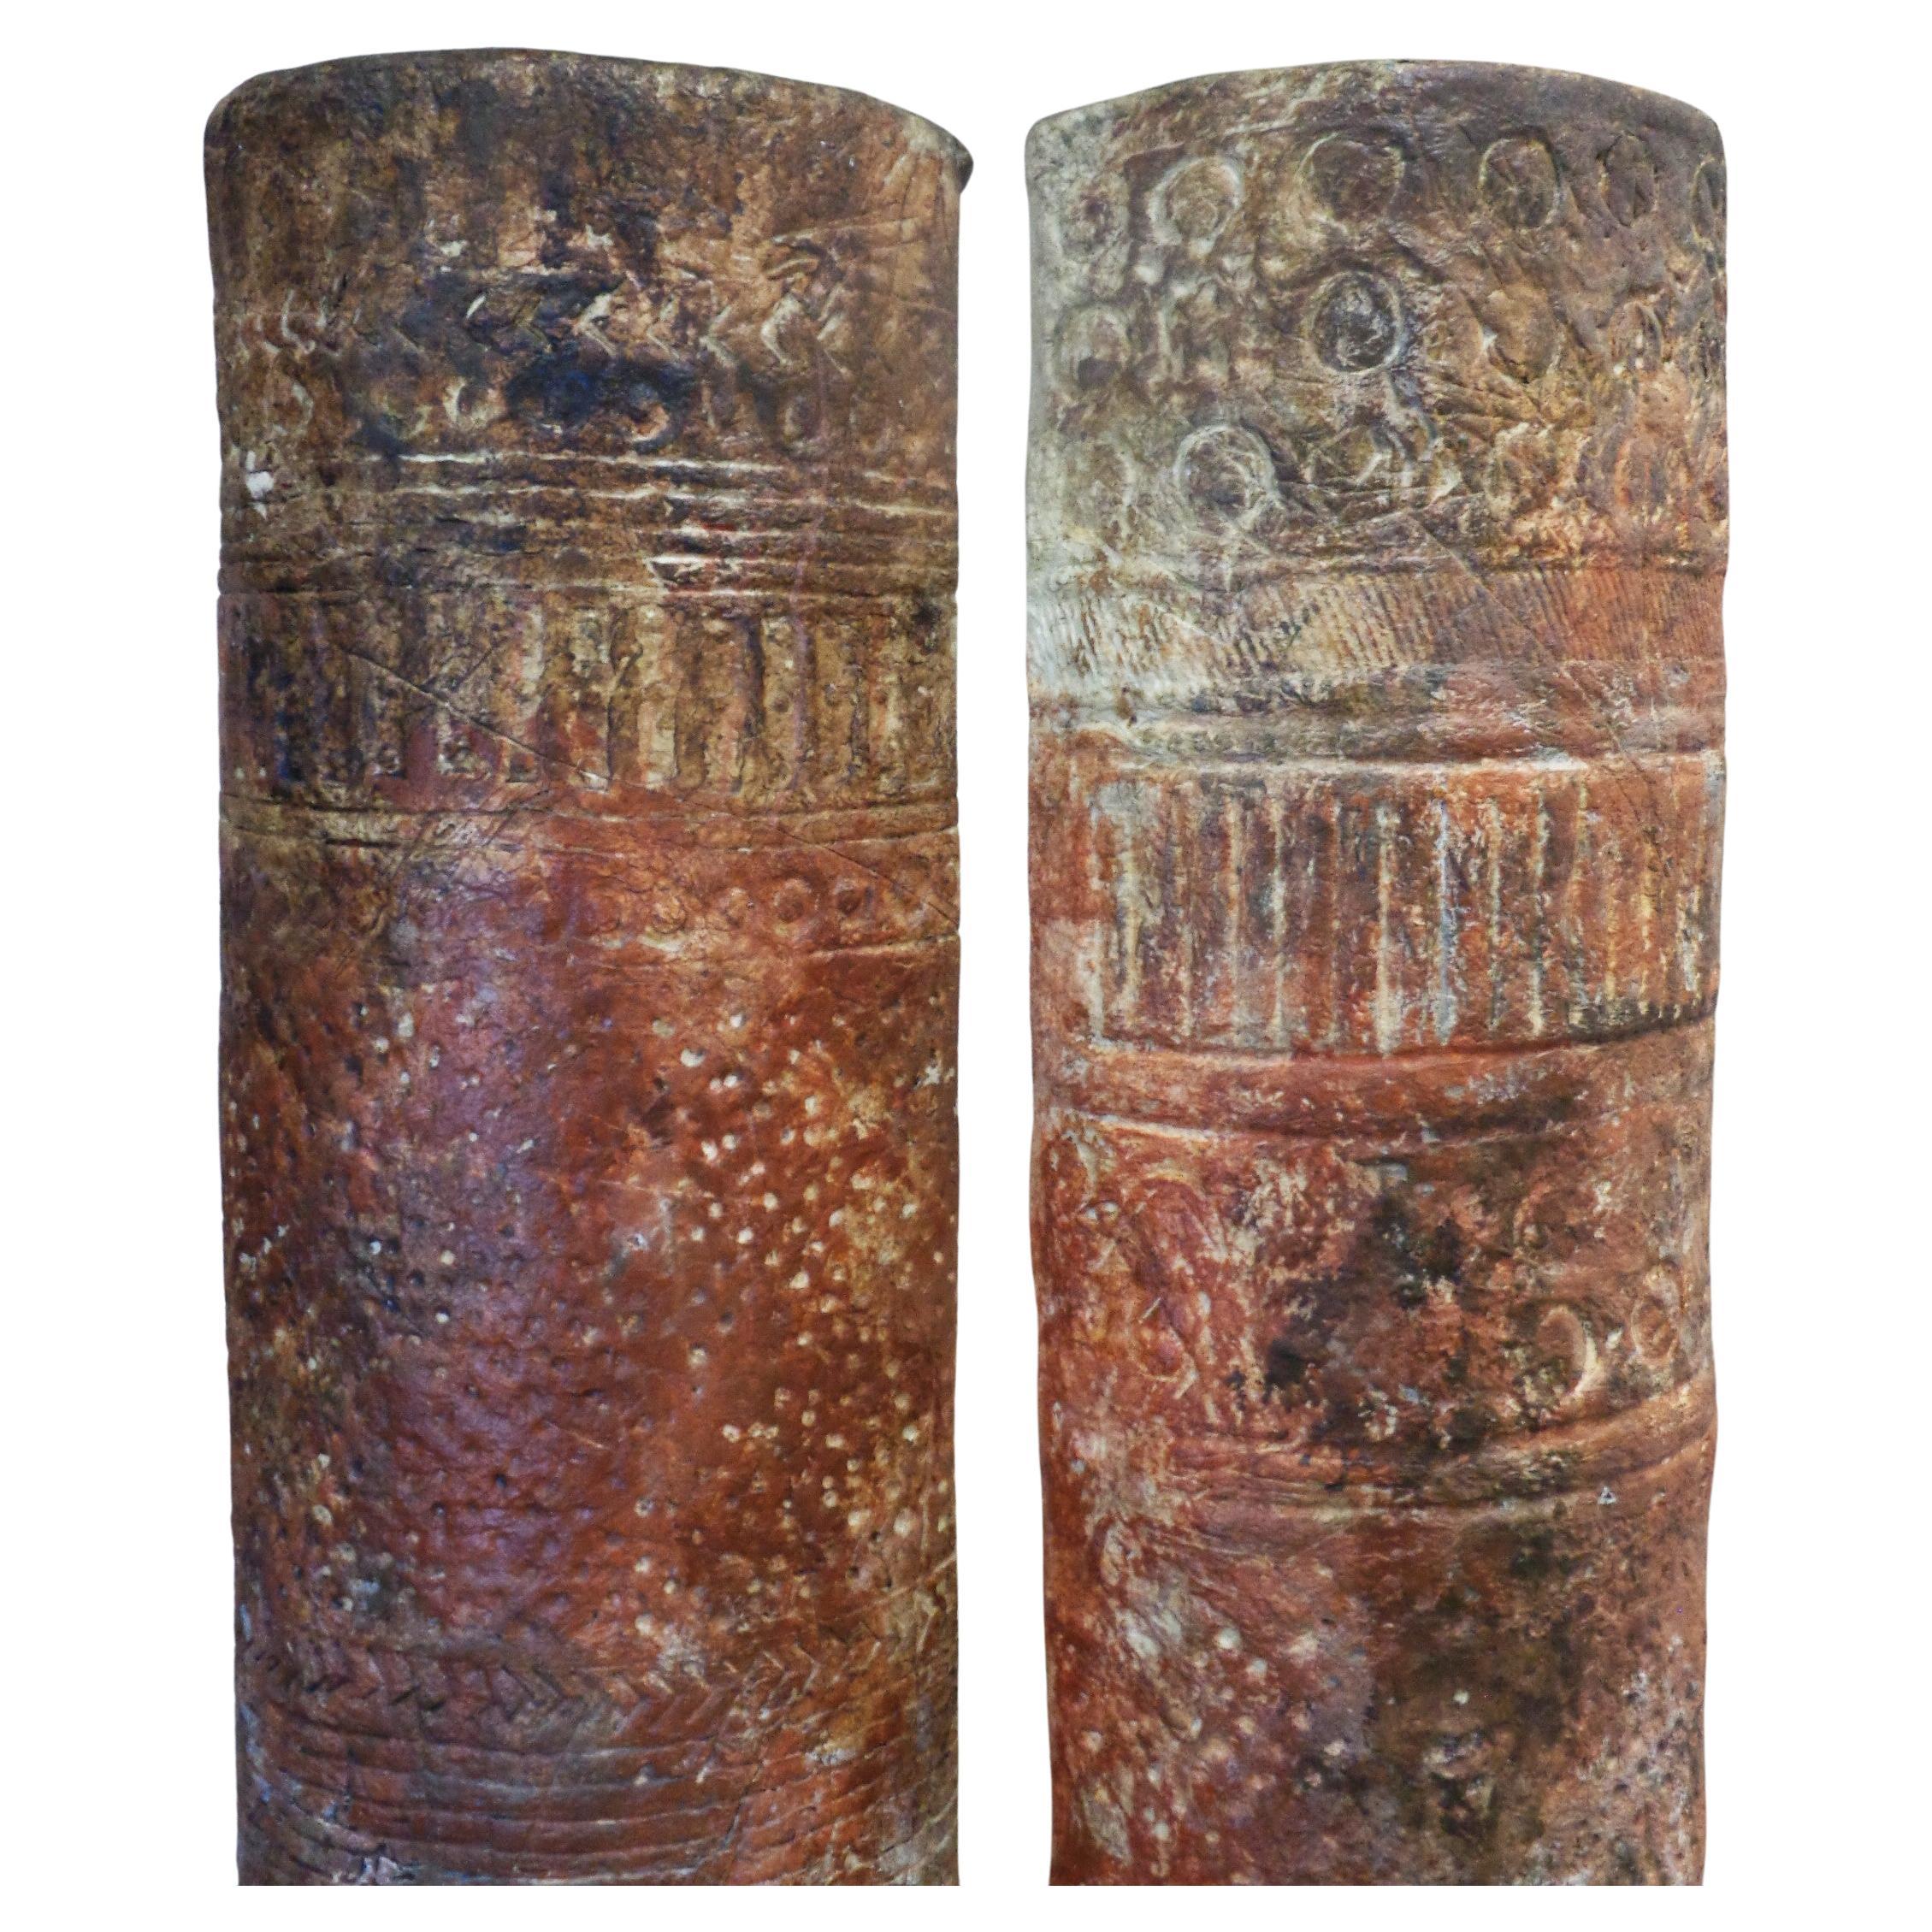 Paire de colonnes pilastres demi-rondes autoportantes du mouvement Studio craft américain, à l'aspect de terre cuite brûlée à l'ancienne et à la décoration de symboles cryptiques. Les colonnes ont été construites à partir d'une émulsion de type